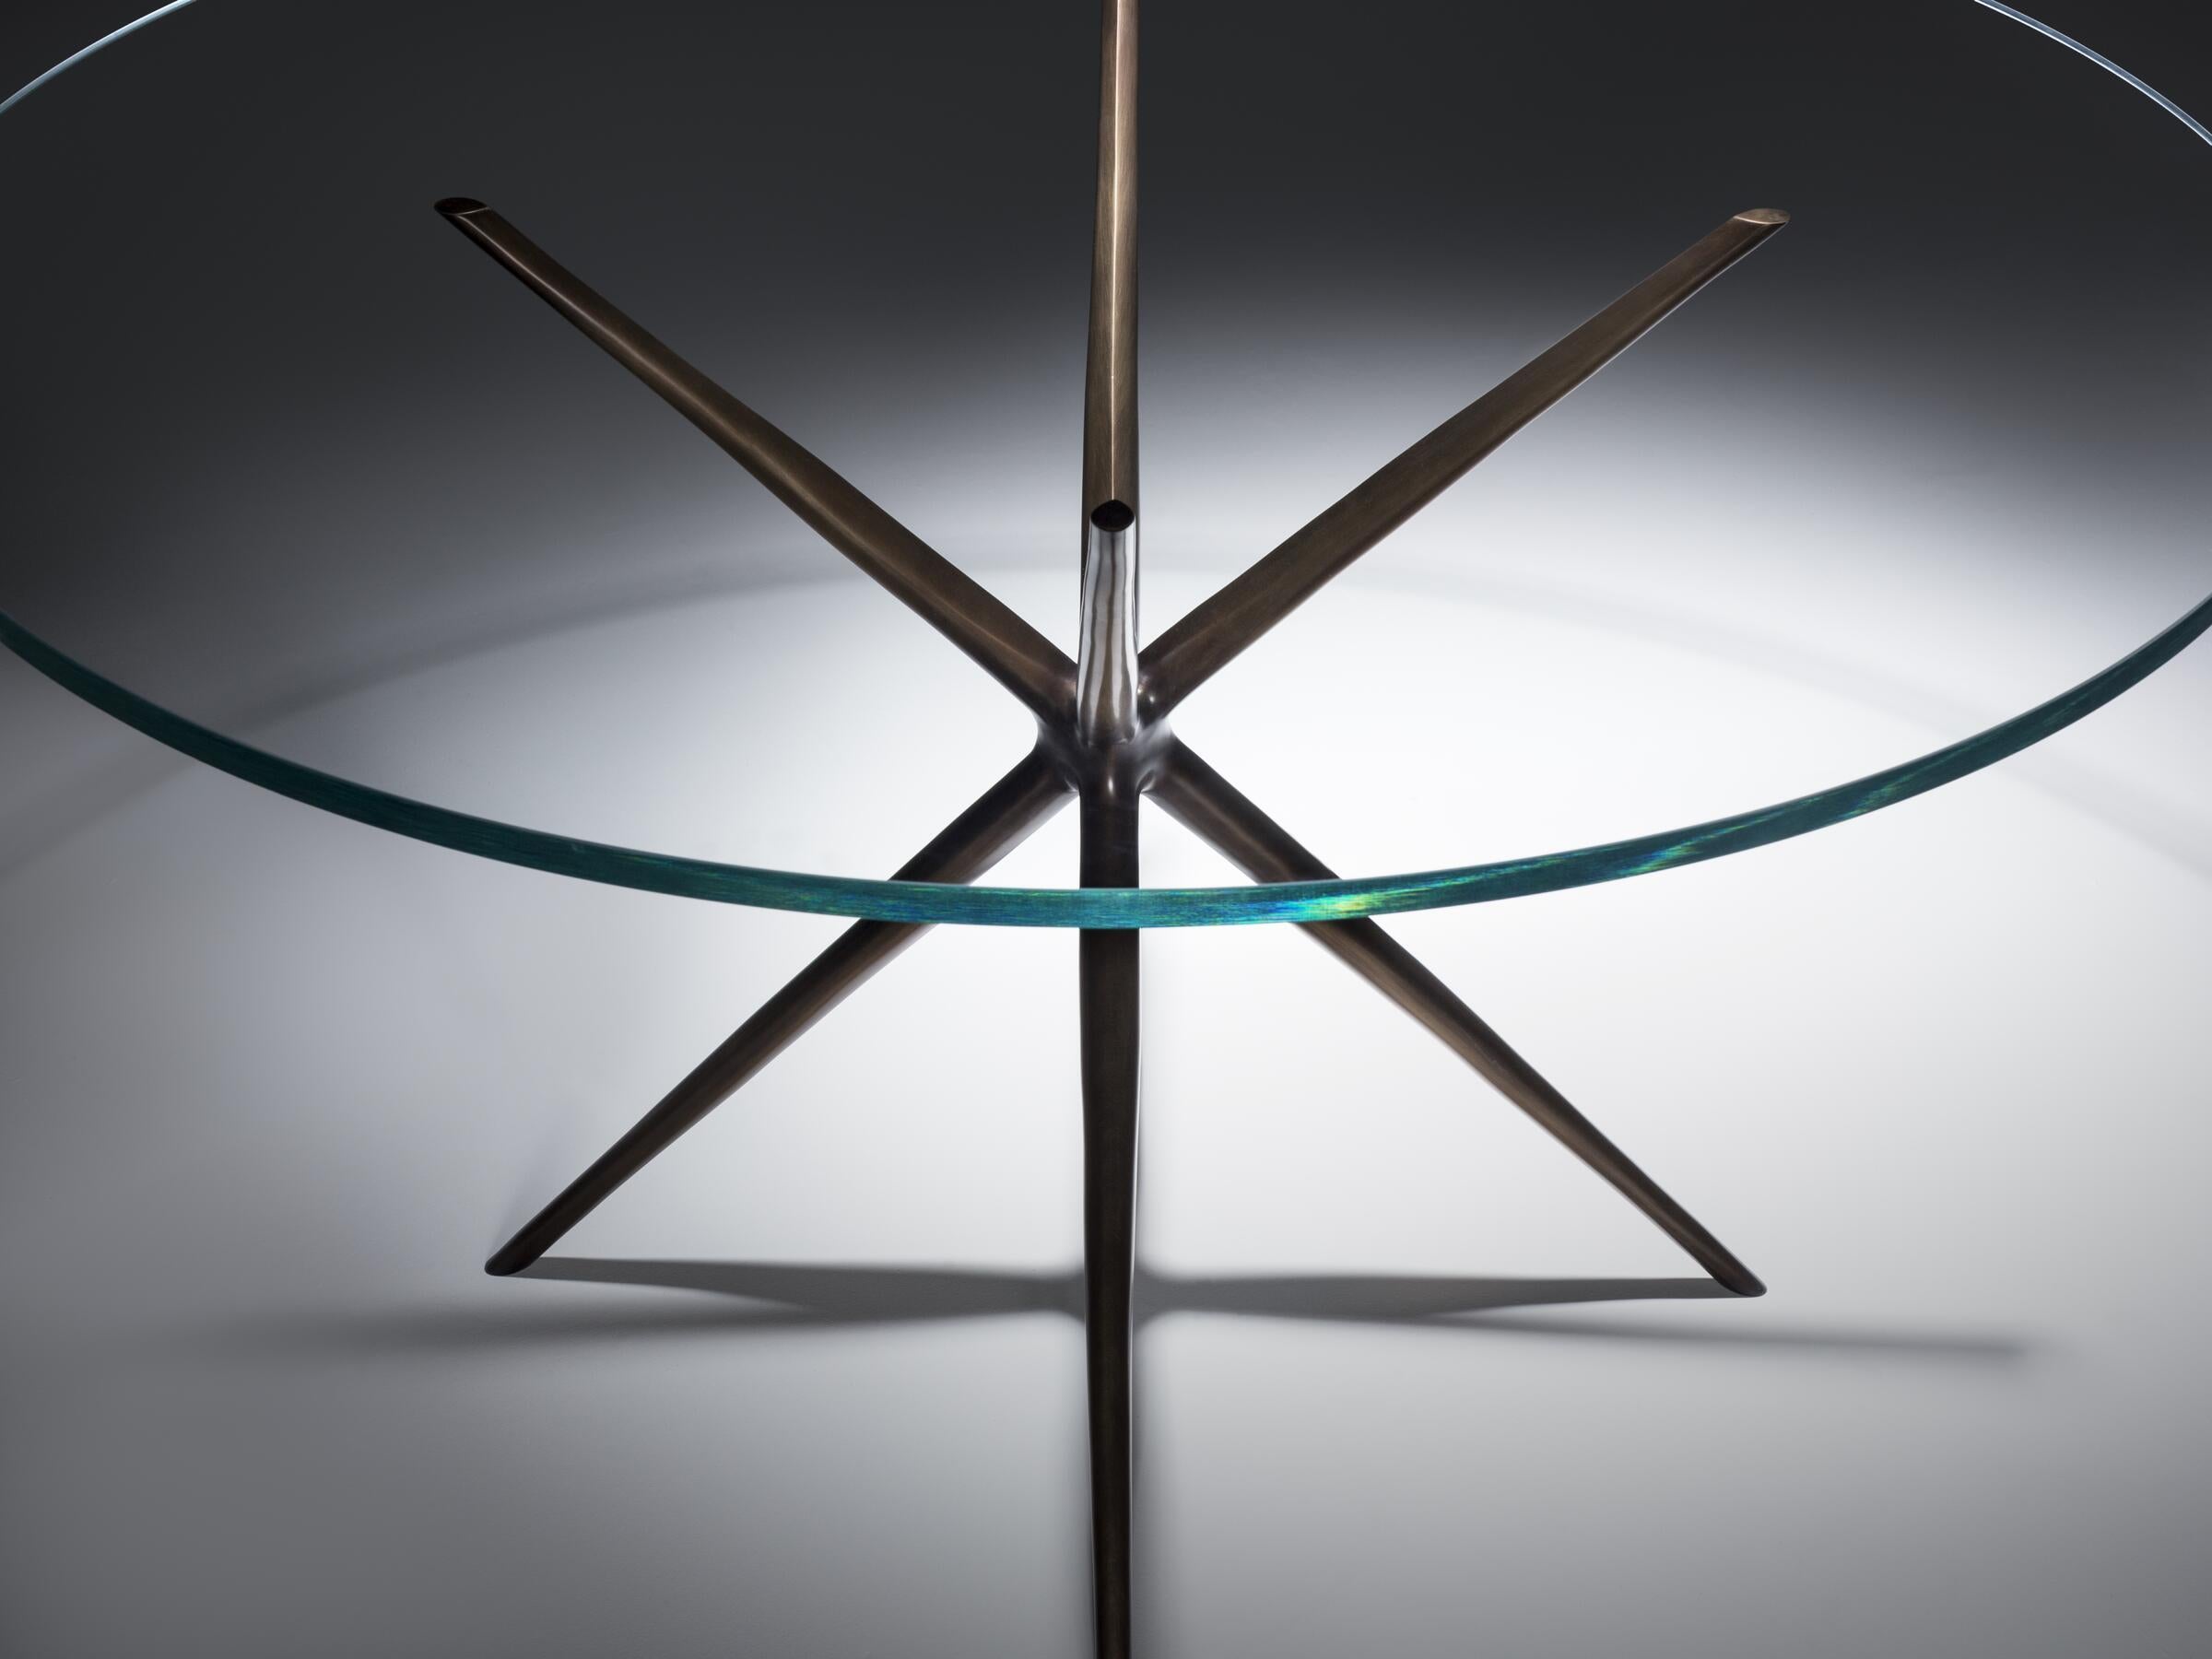 Conçue par Paul Mathieu, la table à manger Etoile est définie par sa base sculpturale en forme d'étoile. Fabriqué en bronze moulé, il présente une magnifique texture de surface qui contraste avec son plateau en verre aux lignes épurées. Dynamique